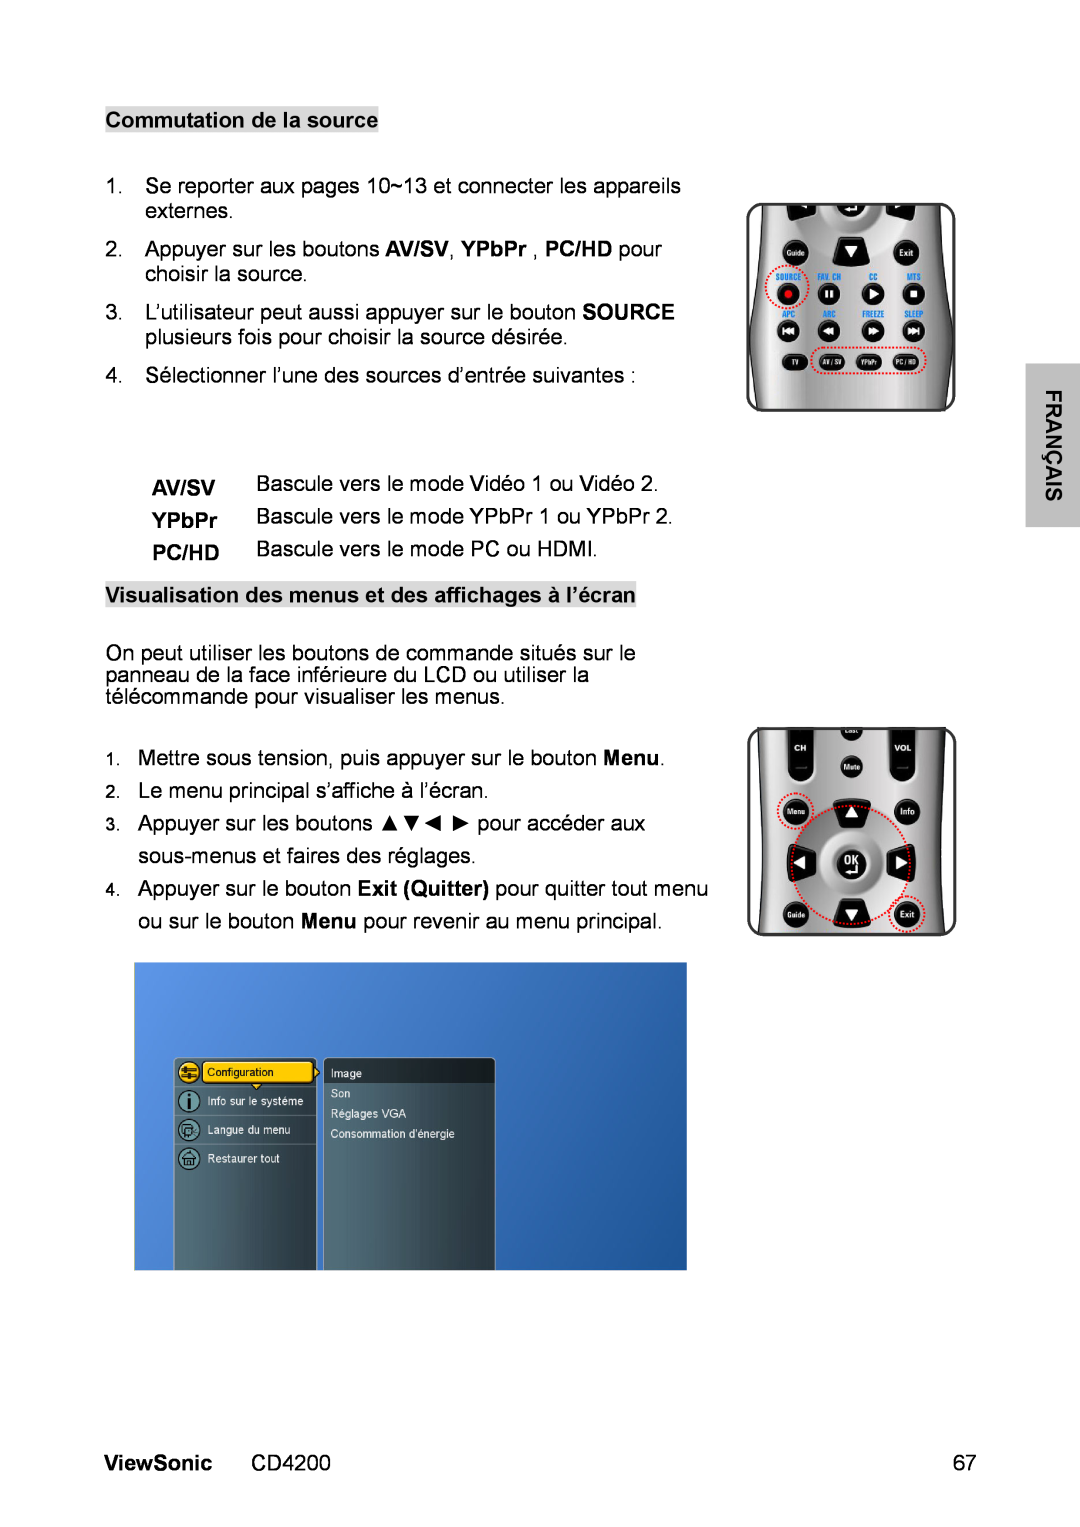 ViewSonic CD4200 manual Commutation de la source, Visualisation des menus et des affichages à l’écran, Av/Sv, YPbPr, Pc/Hd 